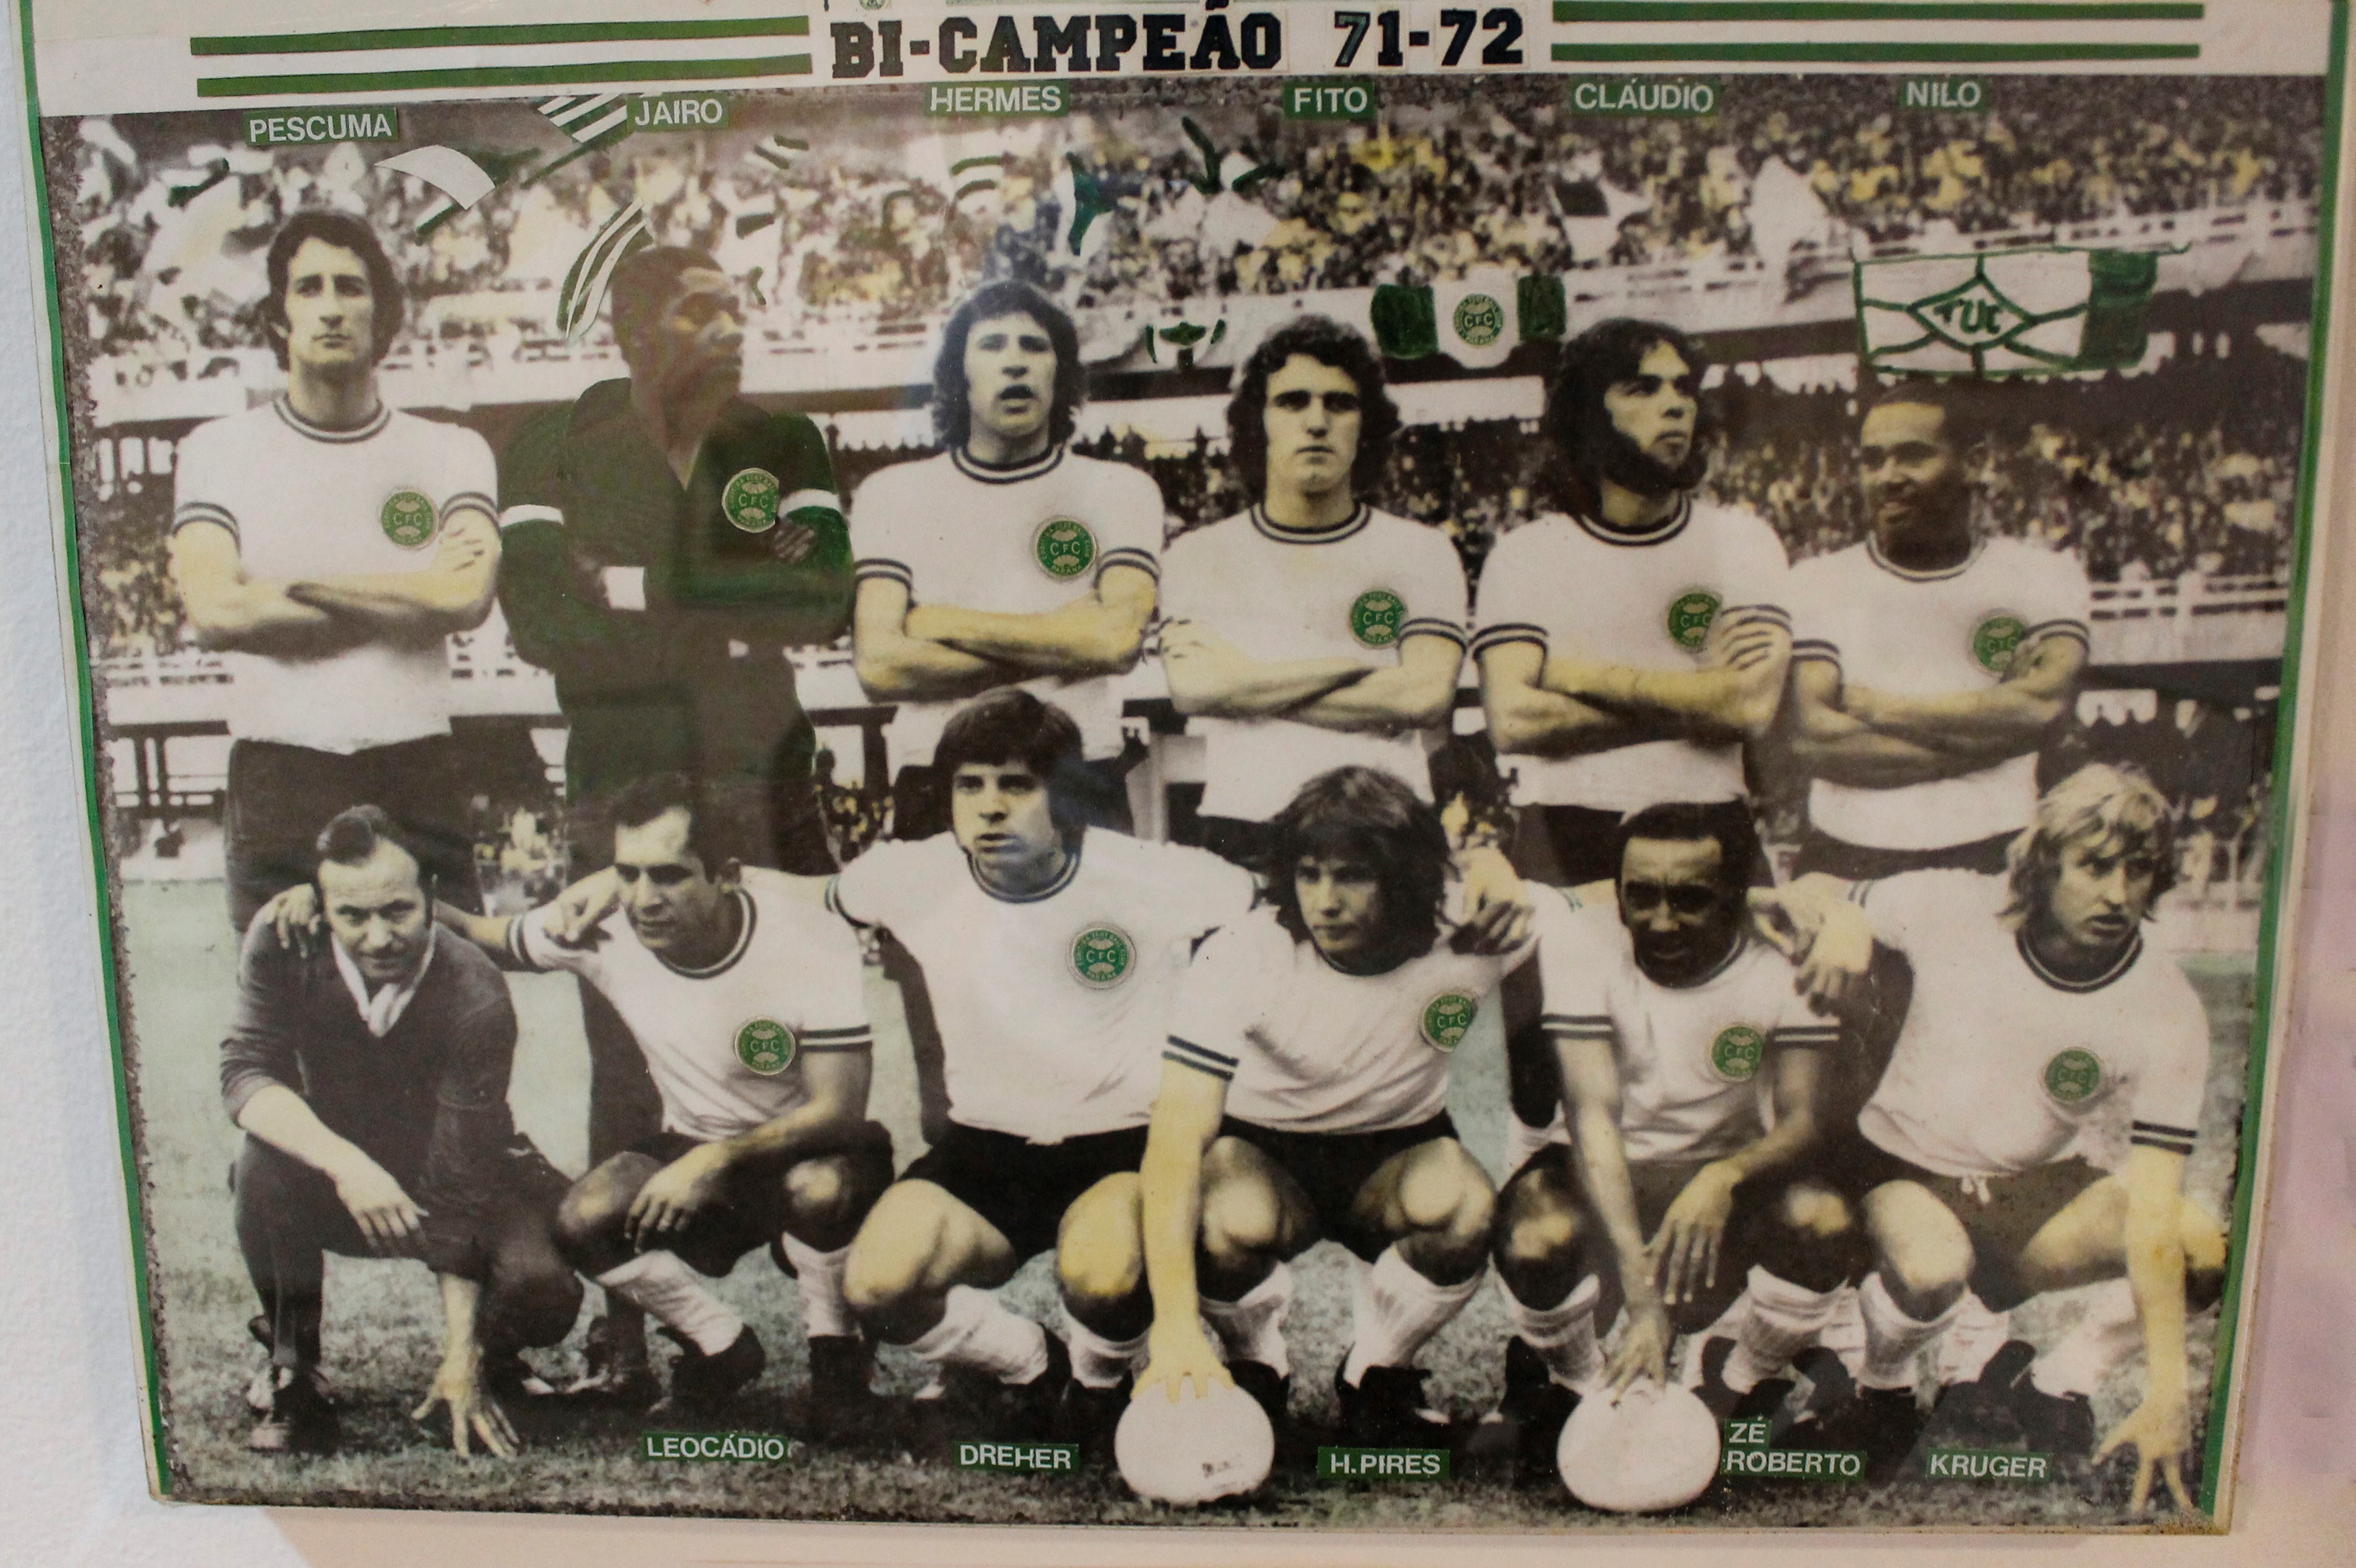 Montagem sobre Dirceu Krüger e sua trajetória em 1979 quando o Coritiba Foot Ball Club sagrou-se bicampeão.